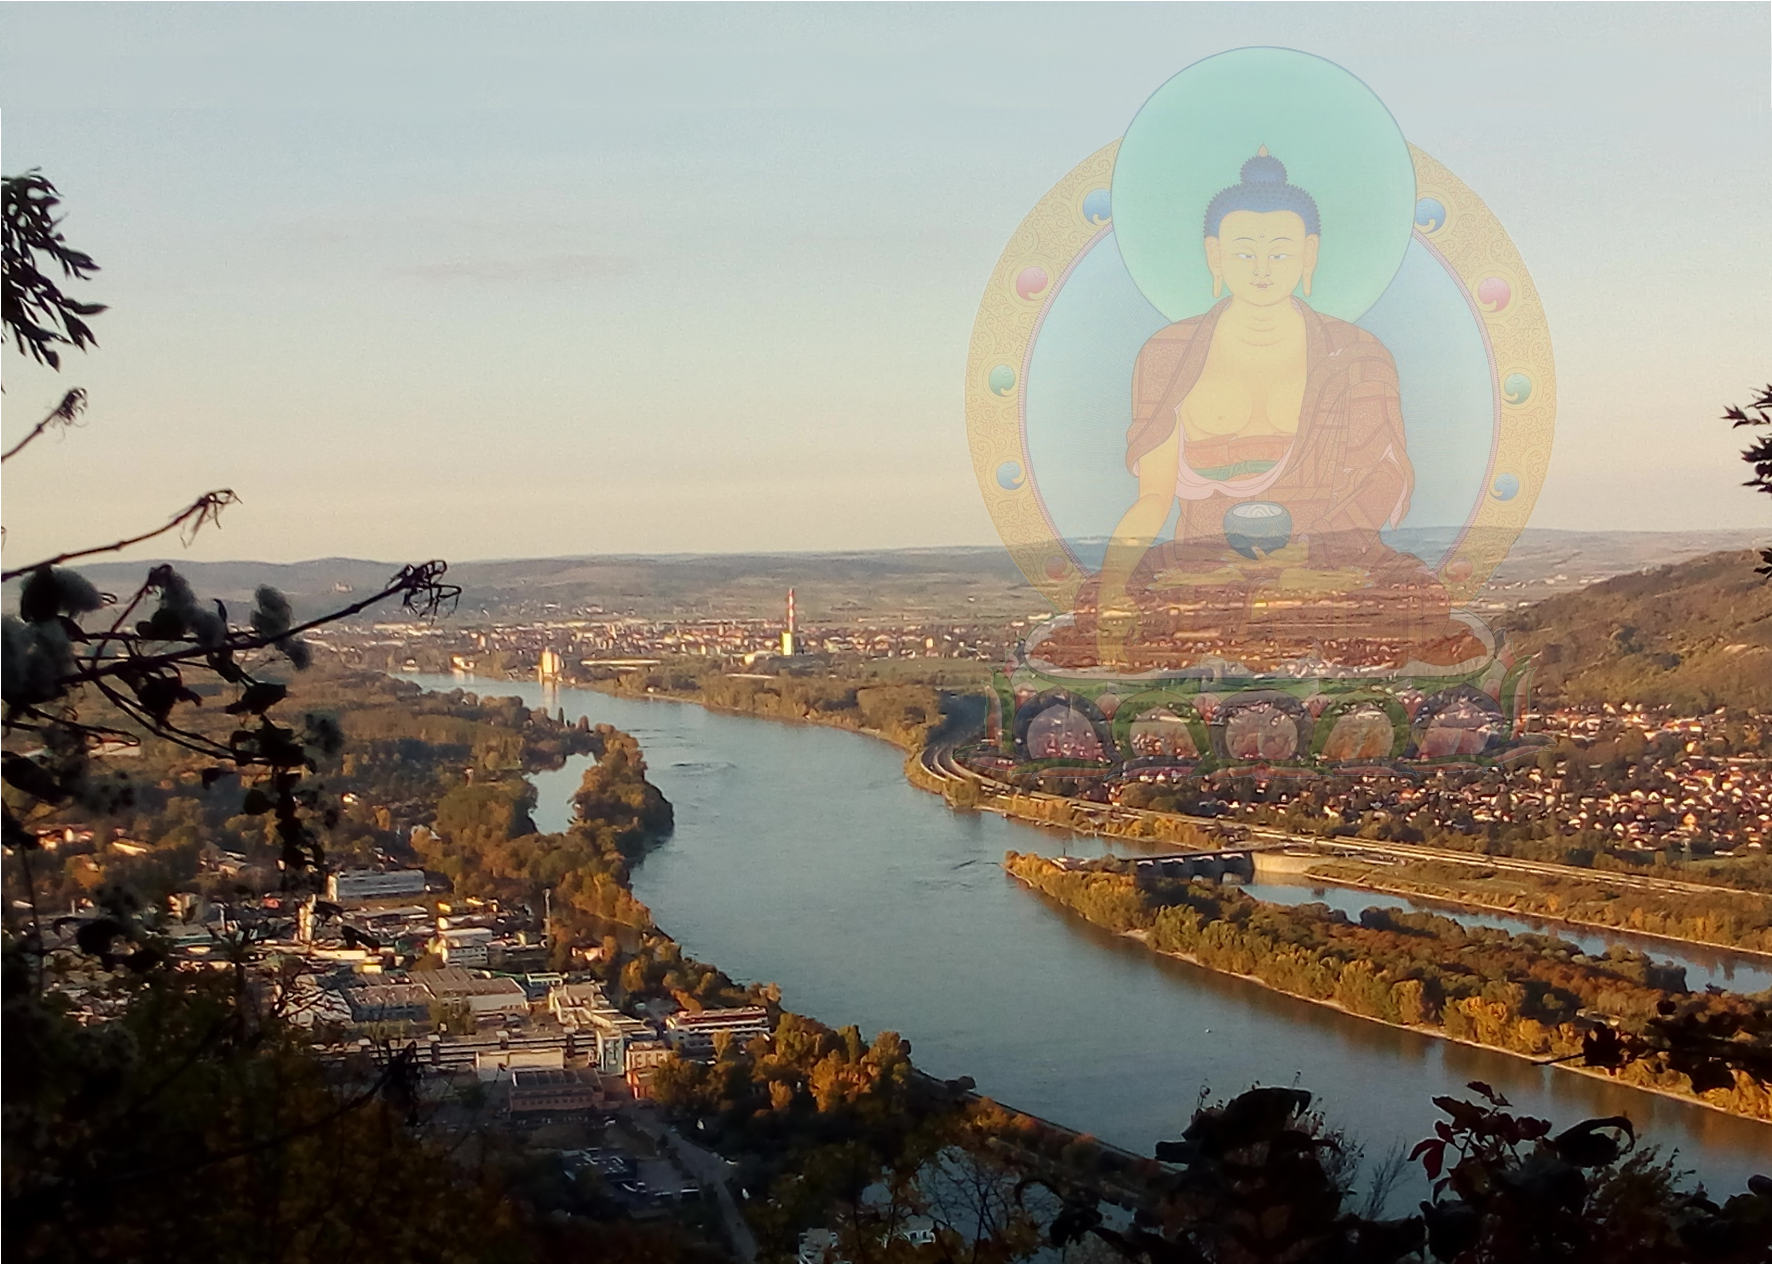 Mittelfranken: Über dem Whazeichen Nürnbergs schwebt ein durchscheinender Vajrasattva Buddha